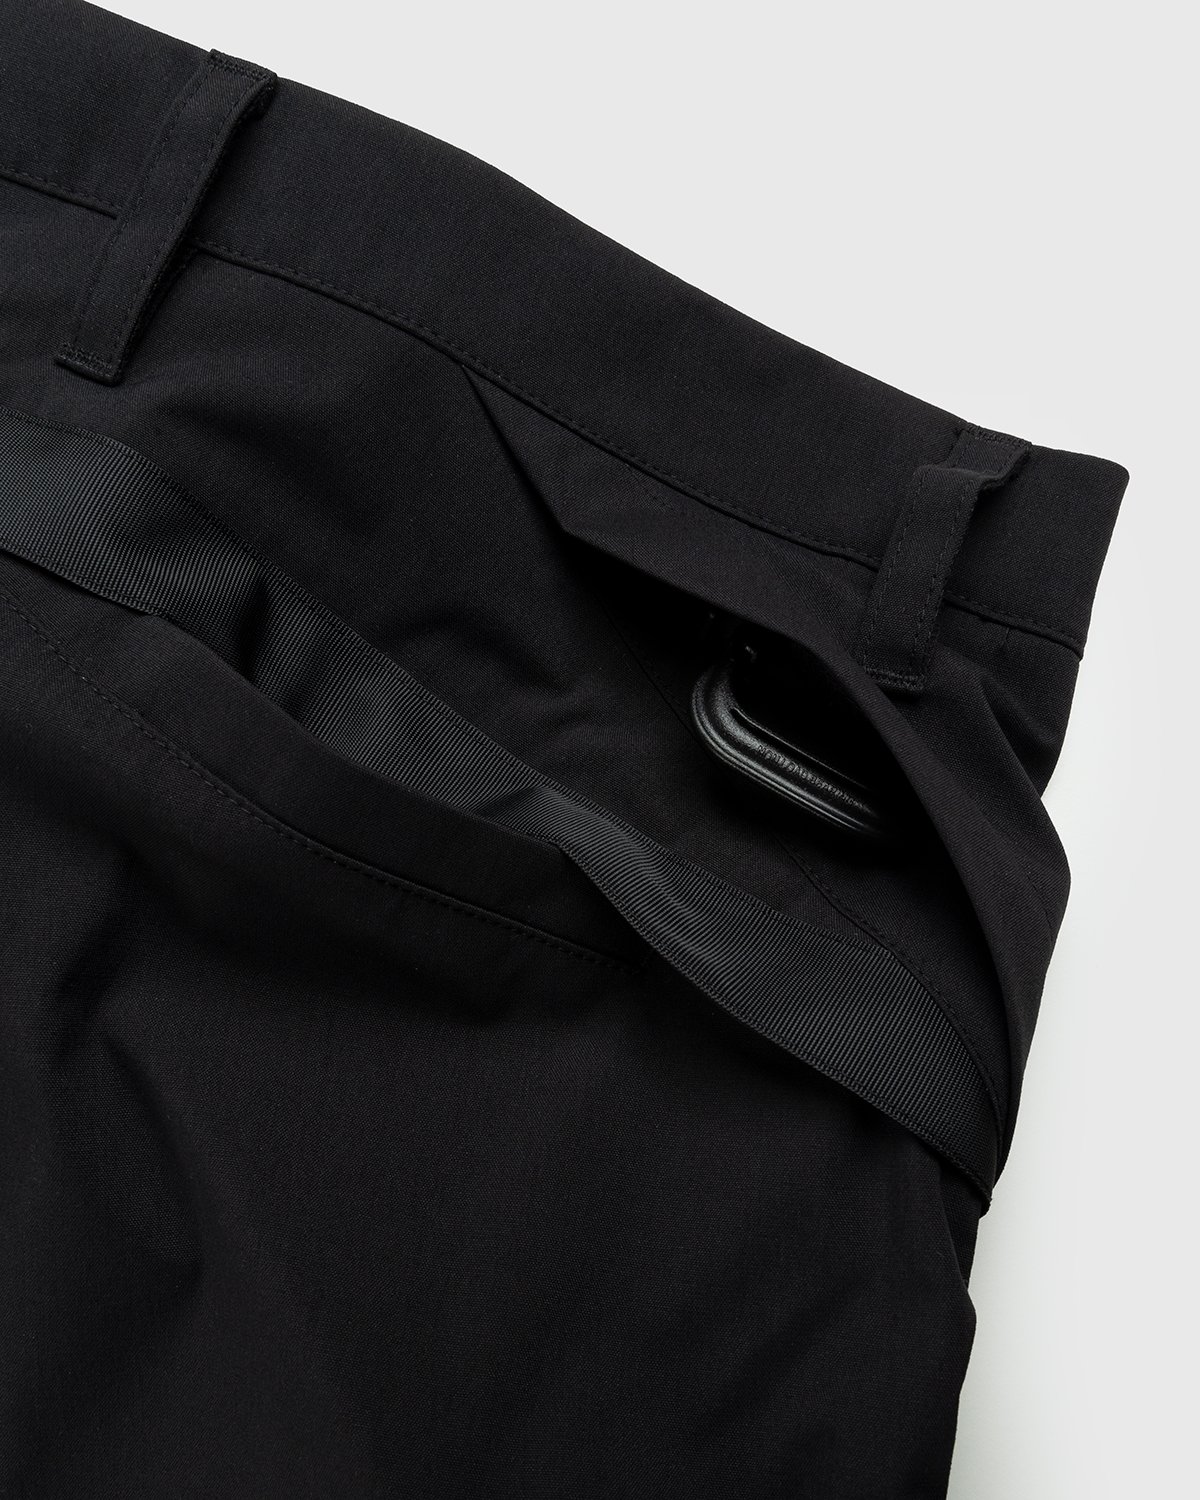 ACRONYM - P10A-E Cargo Pants Black - Clothing - Black - Image 6